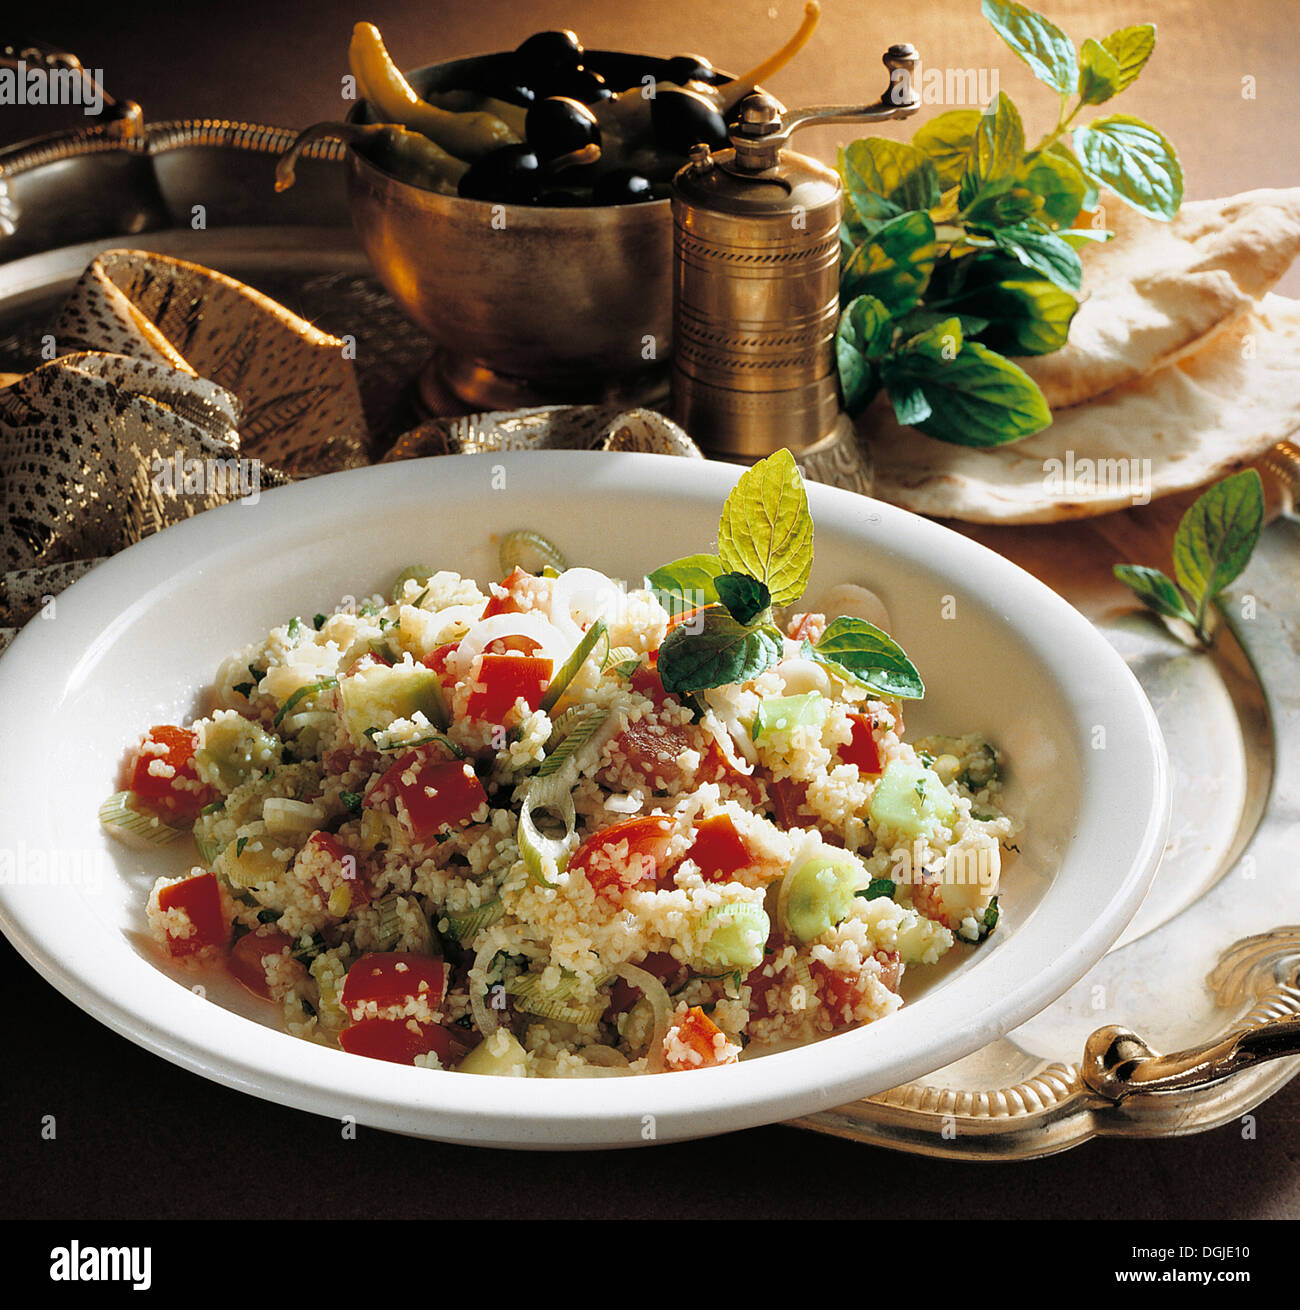 Taboulé libanais, une spécialité du Moyen Orient, avec du boulghour, tomates, concombres, oignons de printemps, le persil et la menthe, Liban Banque D'Images